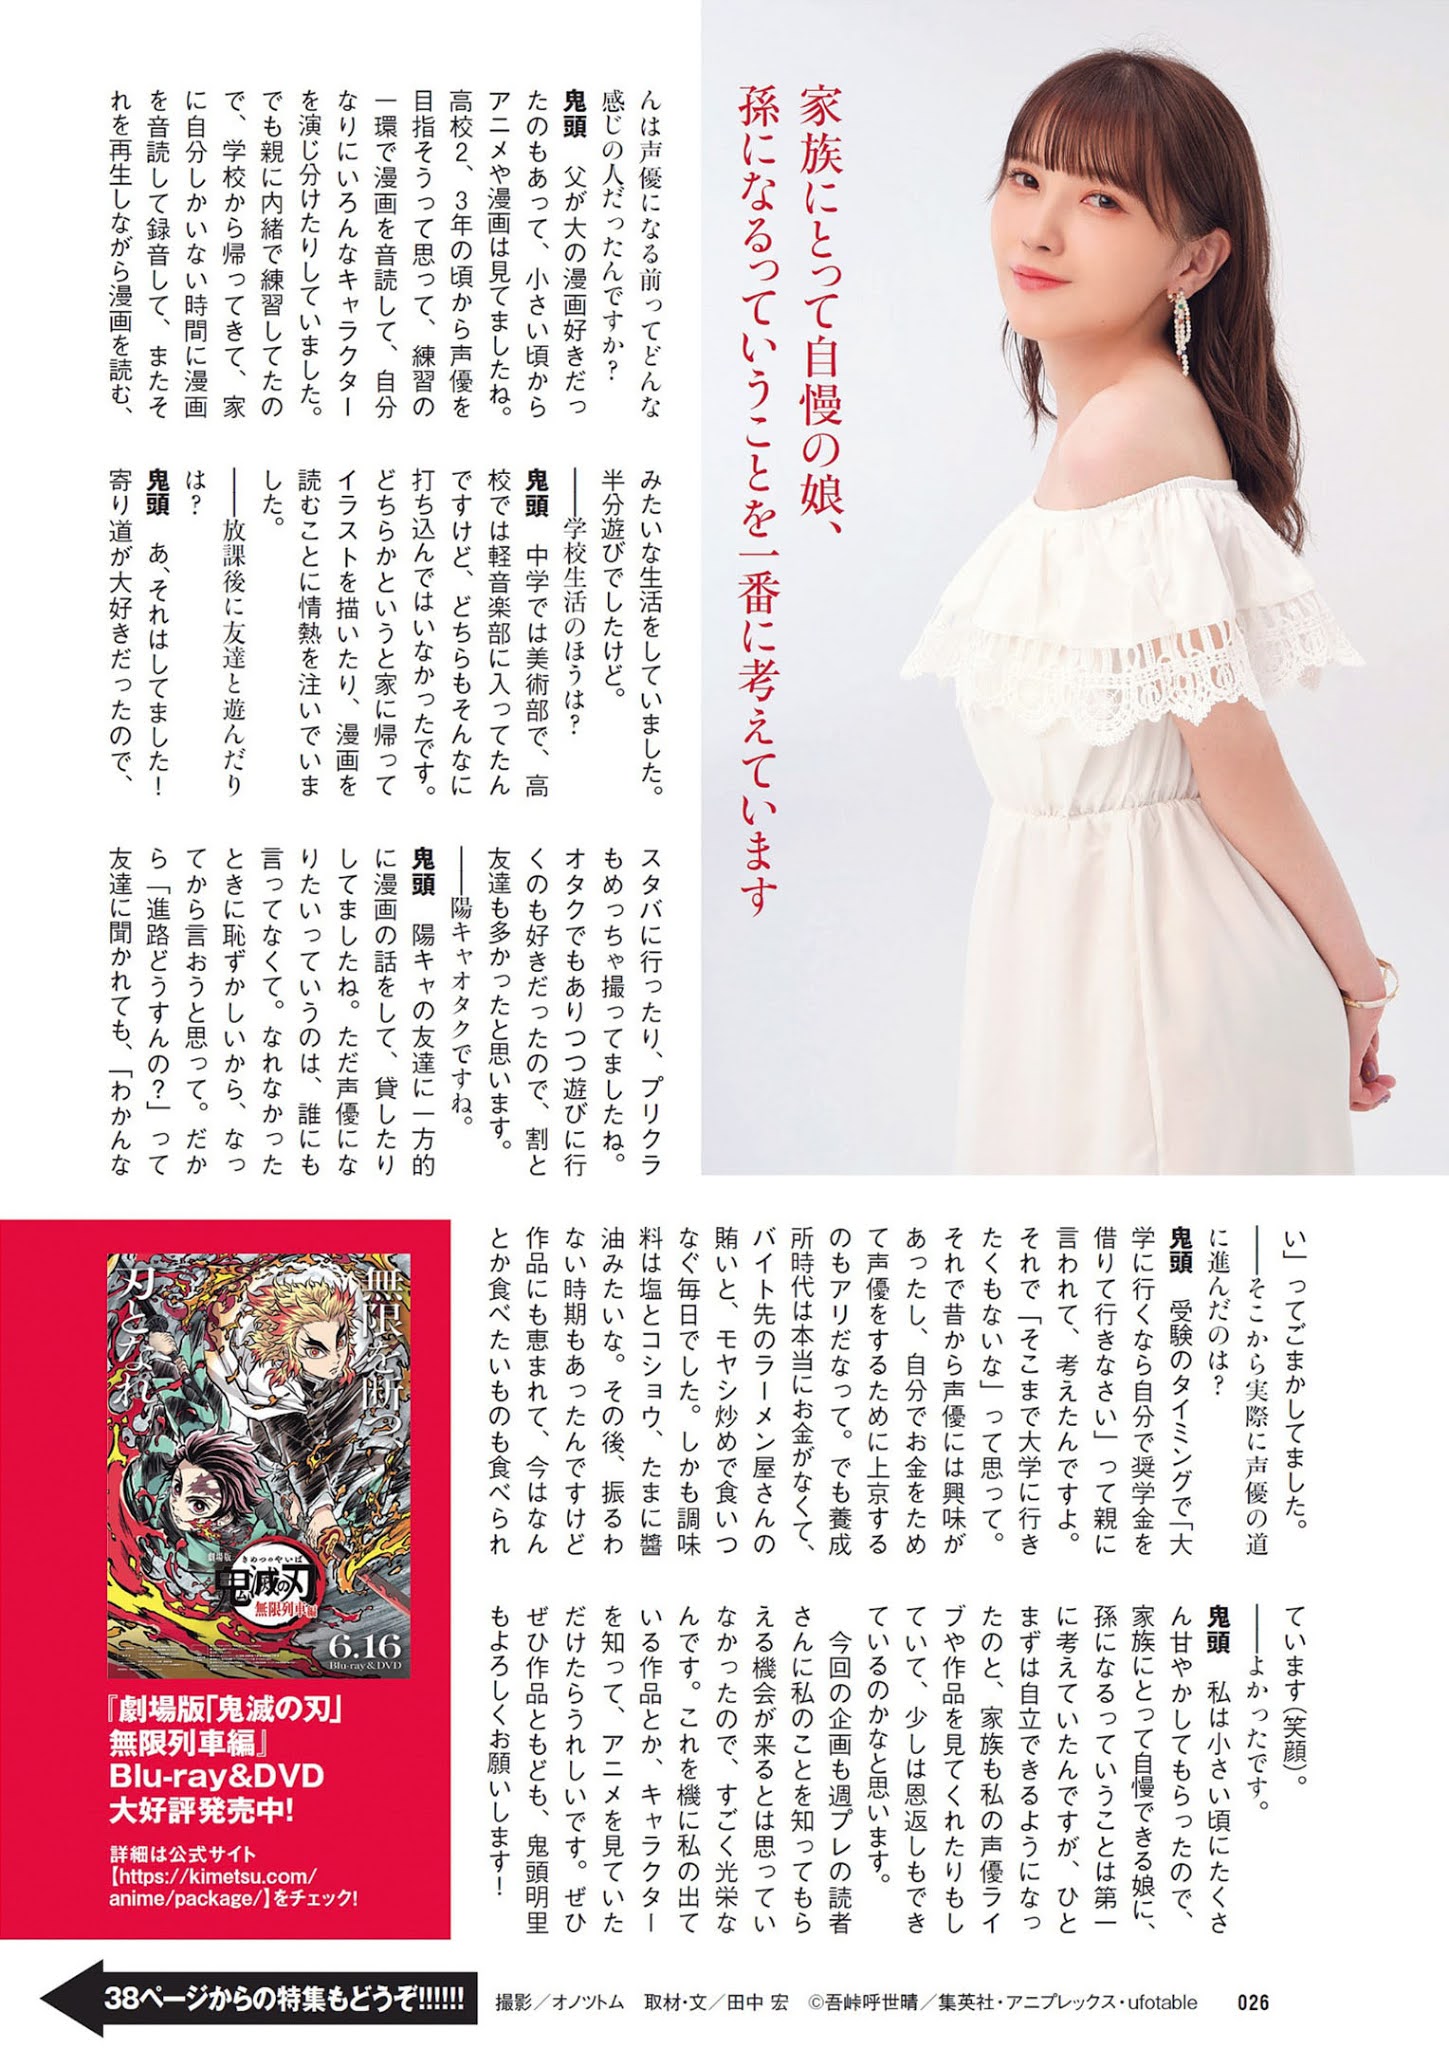 Akari Kito 鬼頭明里, Weekly Playboy 2021 No.30 (週刊プレイボーイ 2021年30号)